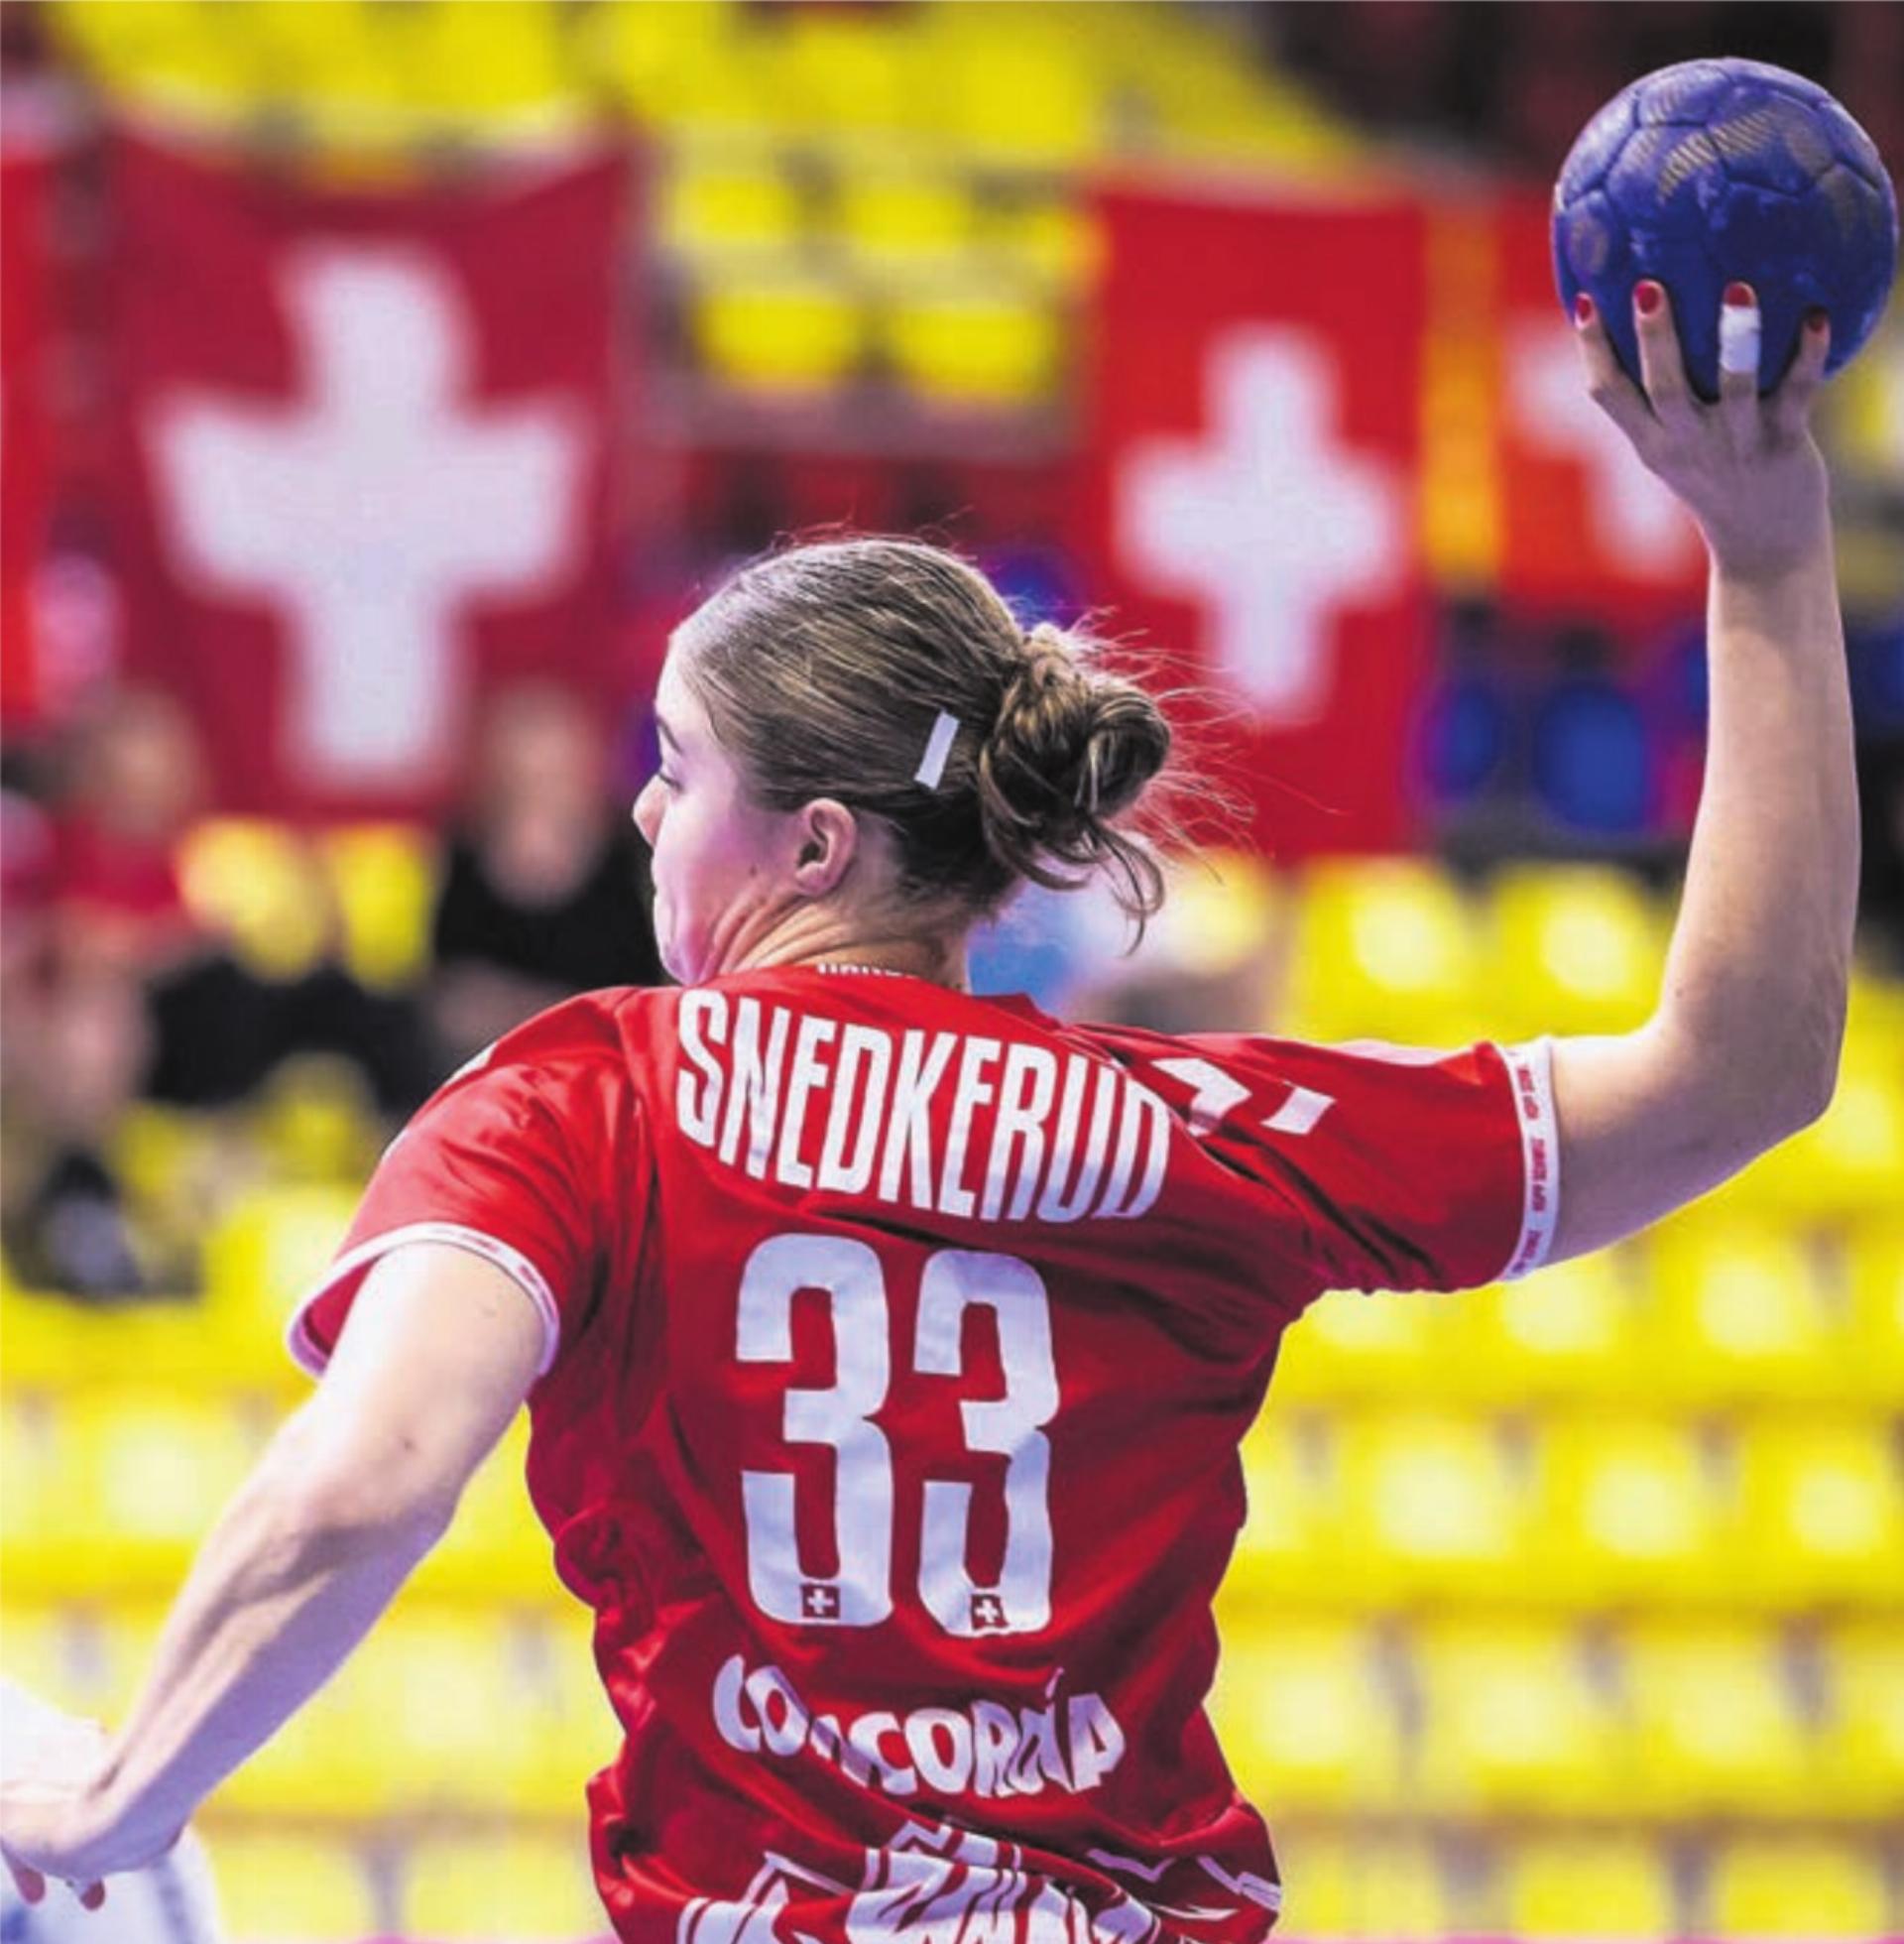 Die Schweizerinnen bleiben makellos an der U20-WM. Die Freiämterin Nora Snedkerud erzielt bislang vier Tore am Kreis. Bild: Jure Banfi / kolektiff